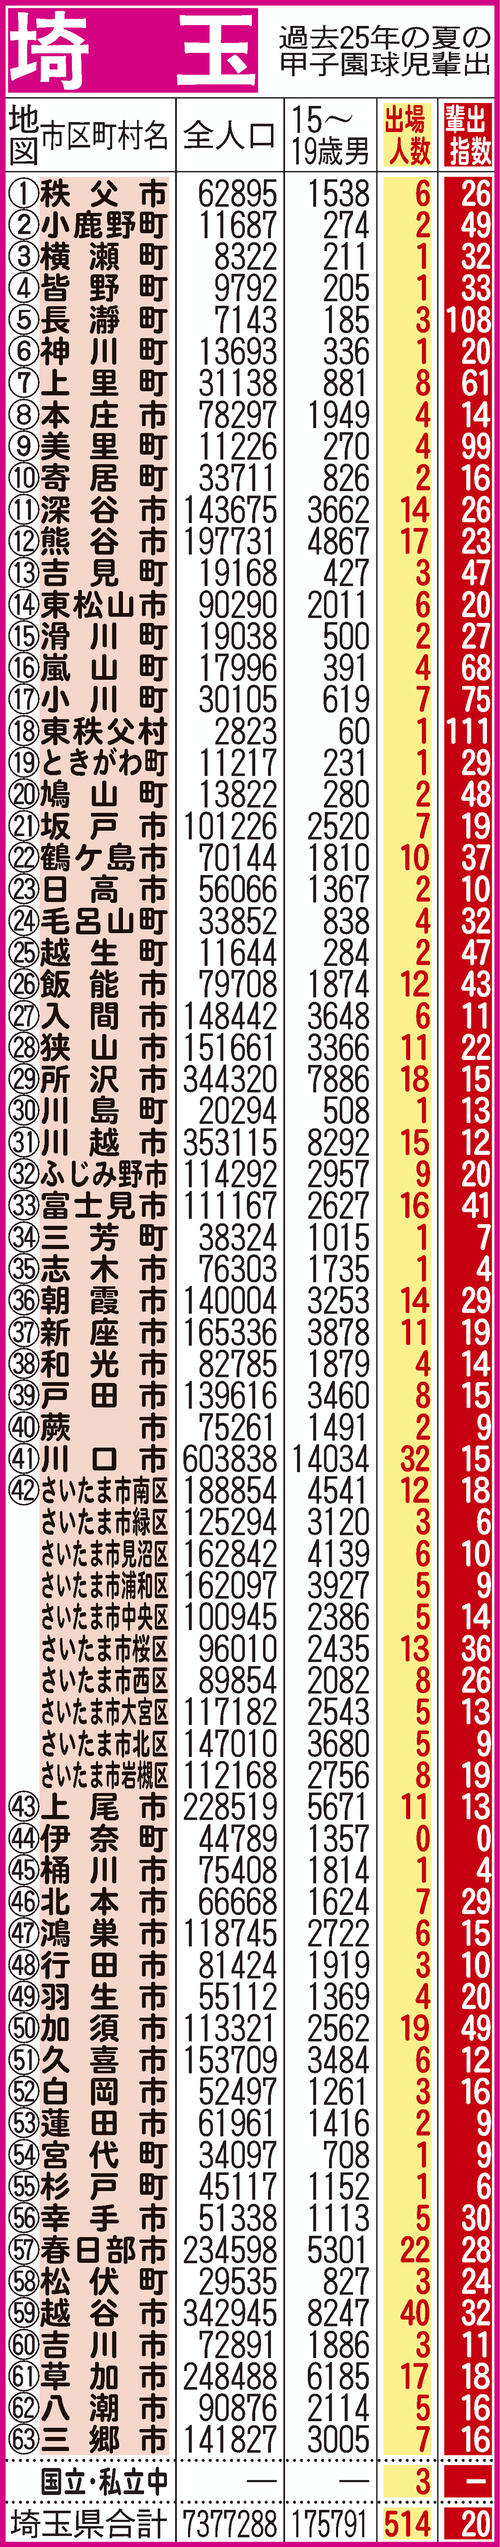 過去25年間における埼玉県地域別の甲子園輩出指数